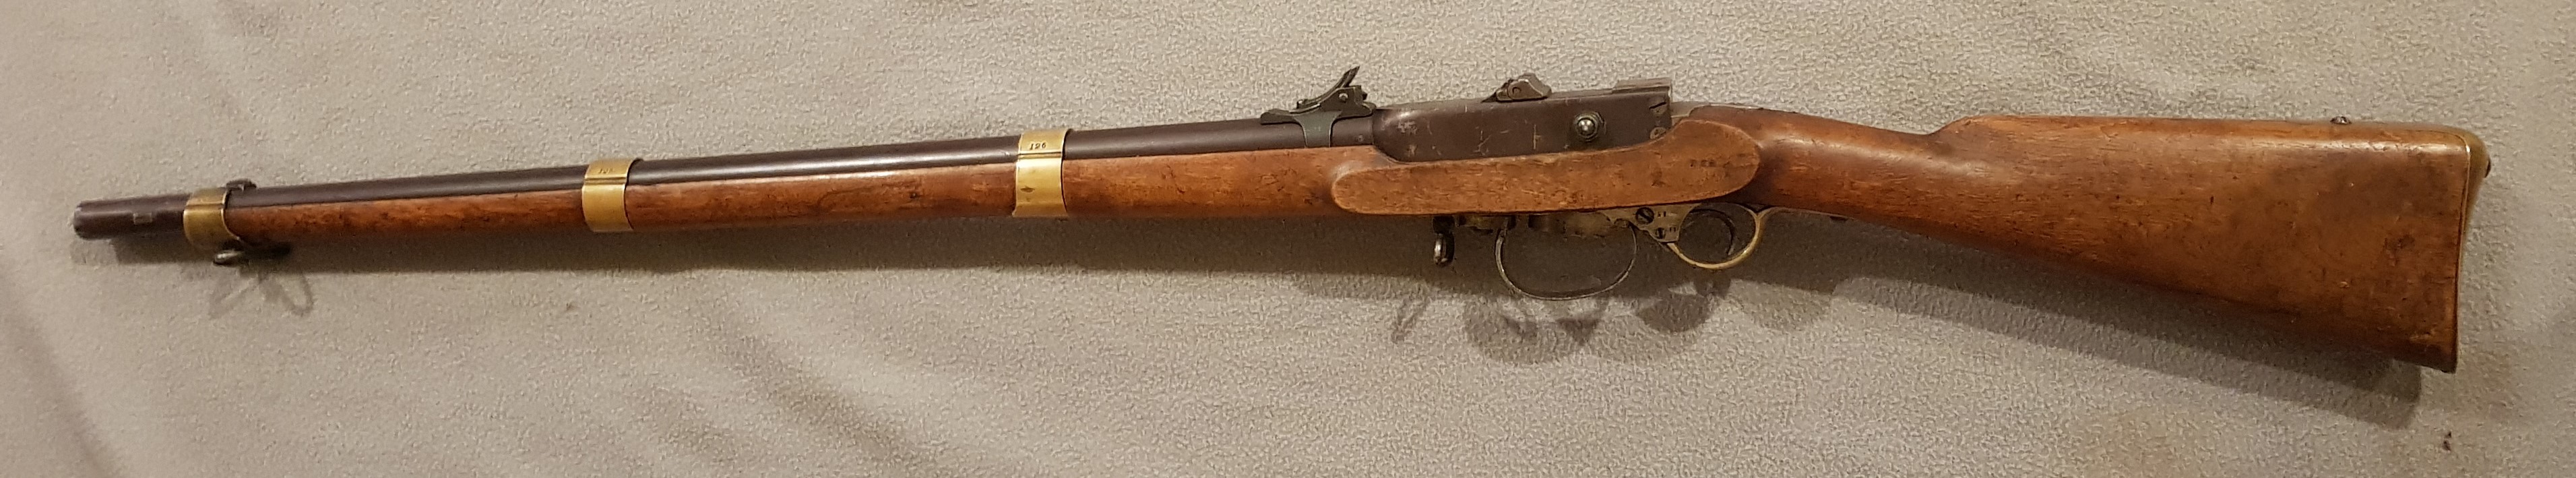 ./guns/rifle/bilder/observed/Rifle-Kongsberg-Kammerlader-M1852-67-126-2.jpg